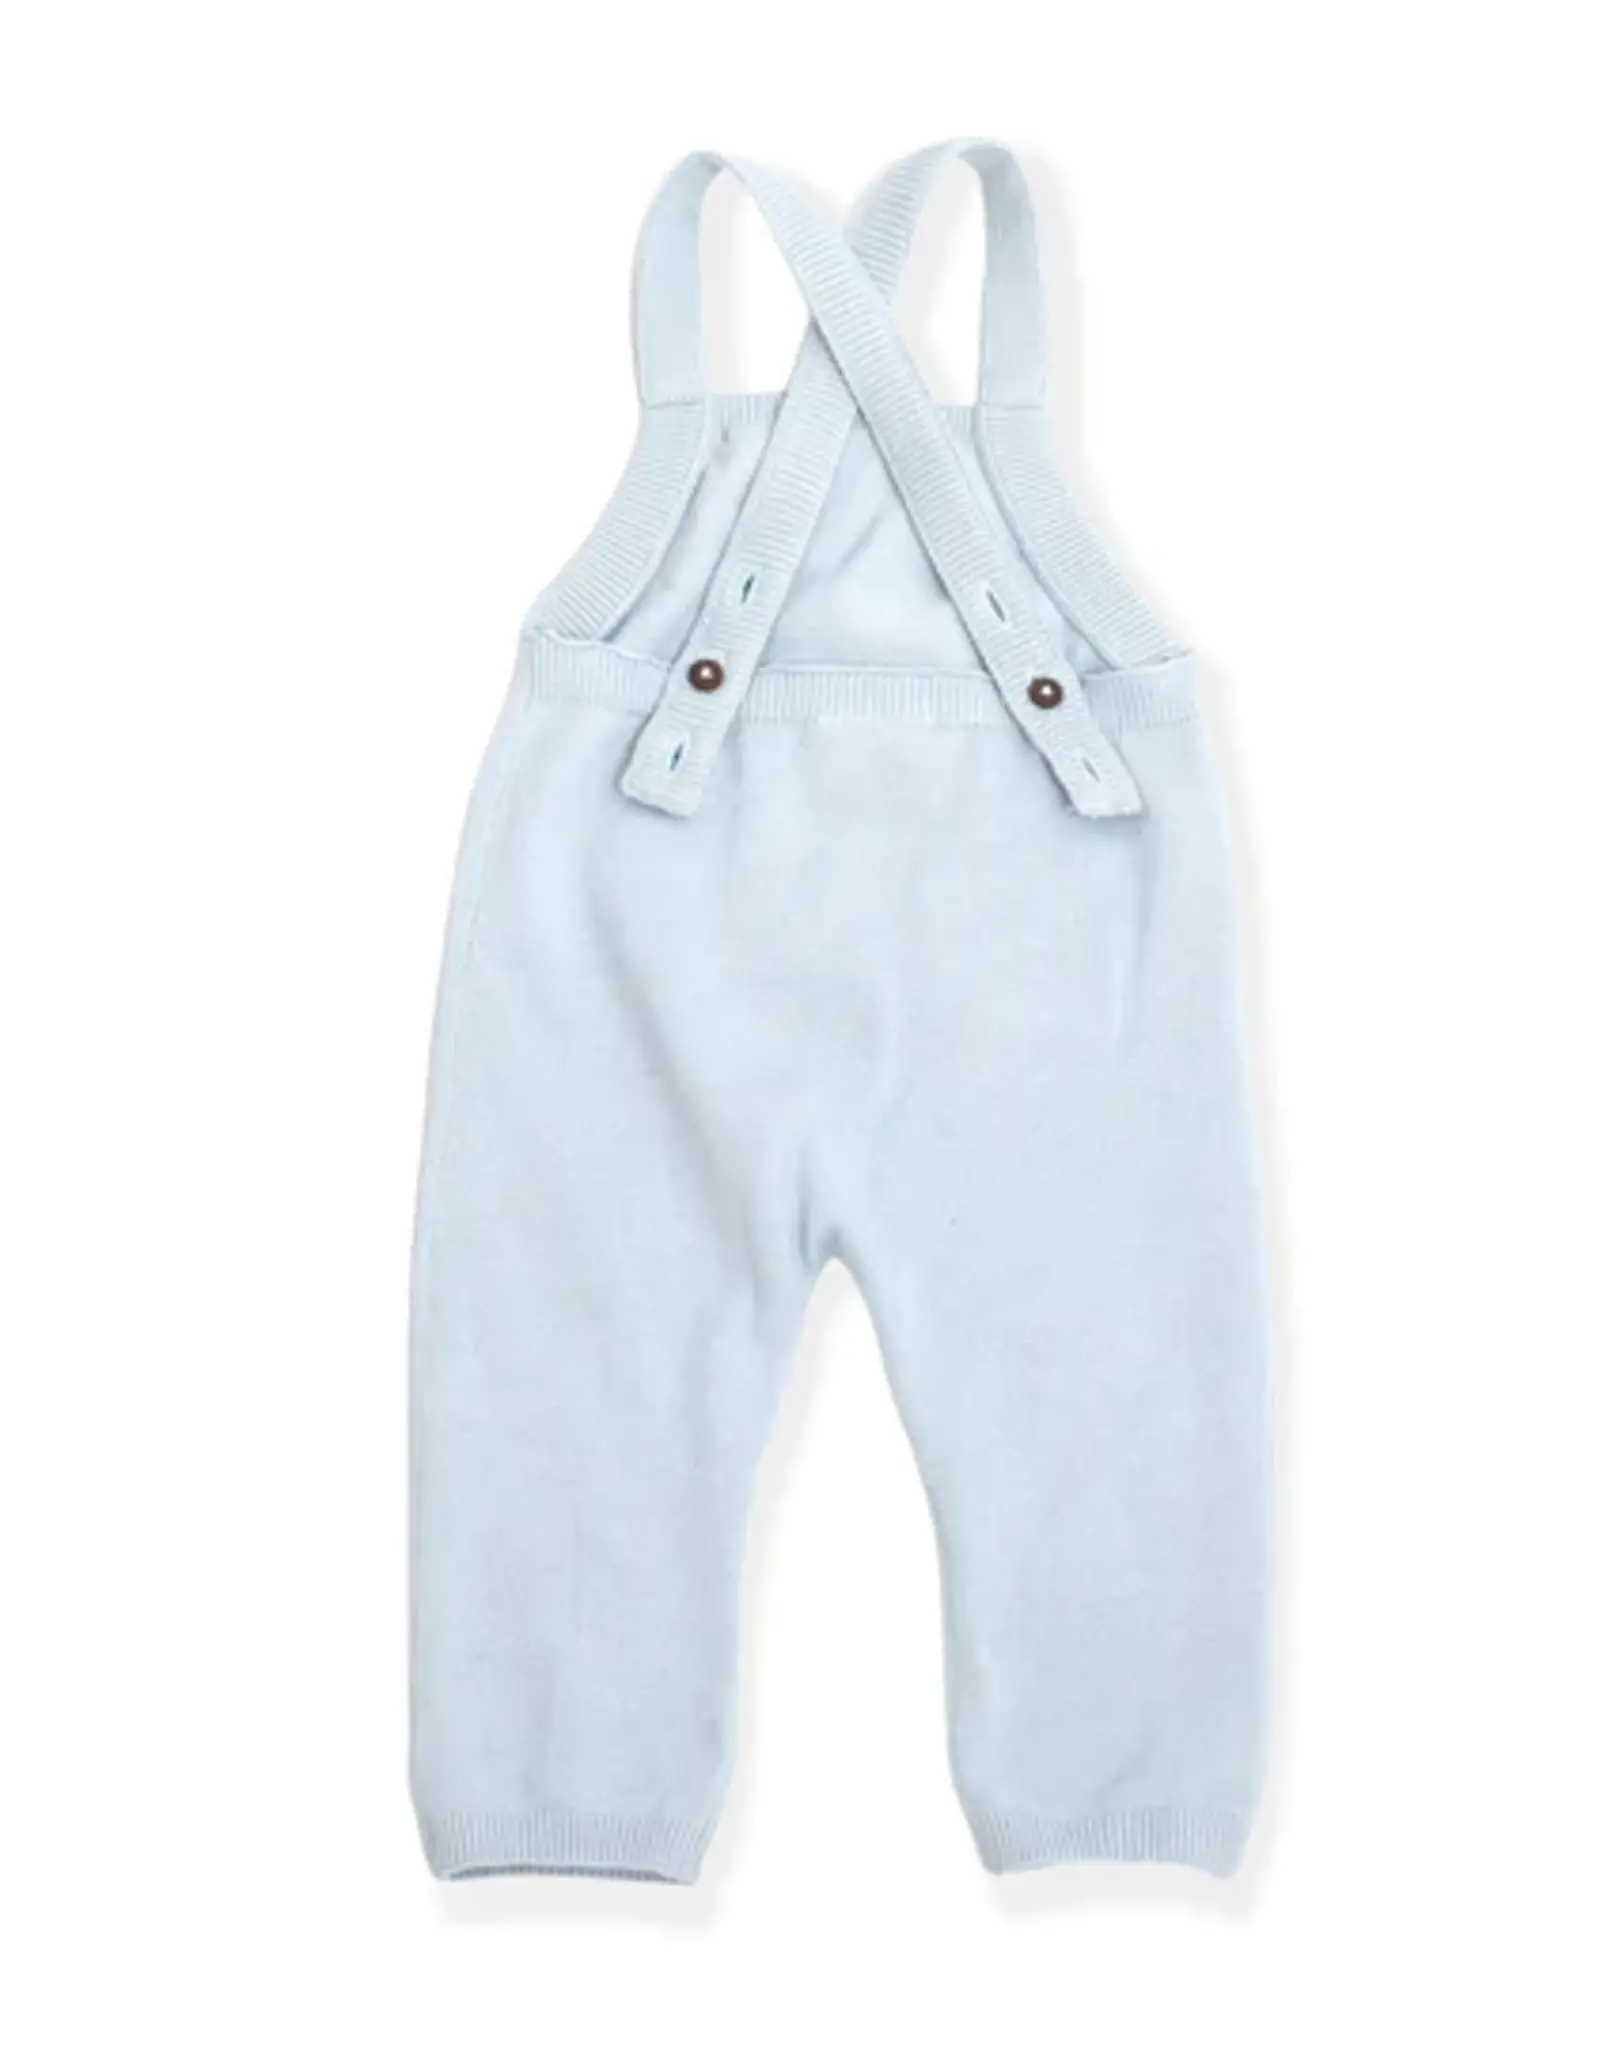 Viverano 0-3MO: Milan Knit Kangaroo Pocket Baby Jumpsuit